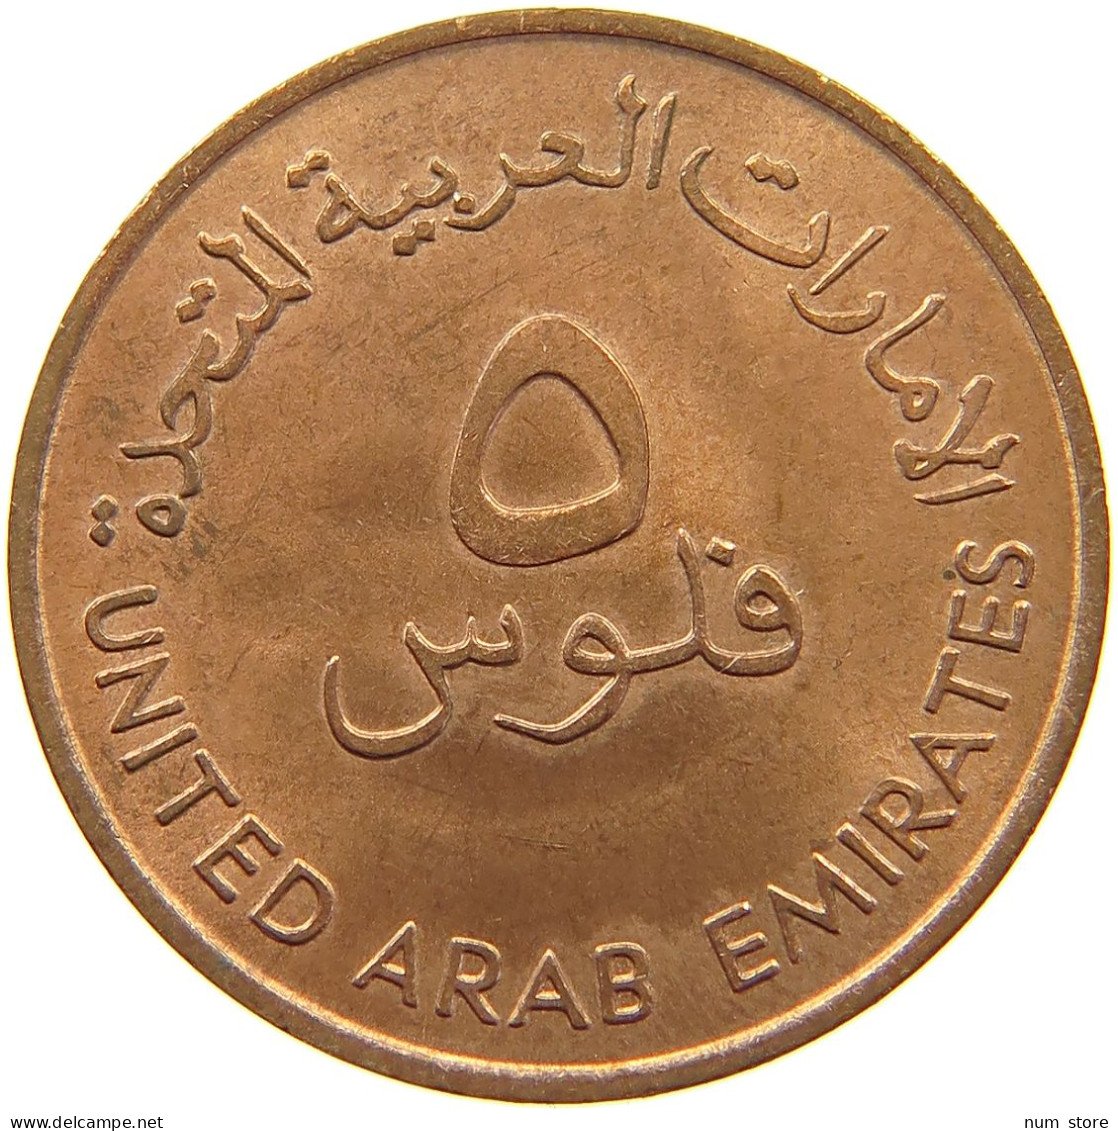 UNITED ARAB EMIRATES 5 FILS 1973  #c013 0255 - Ver. Arab. Emirate